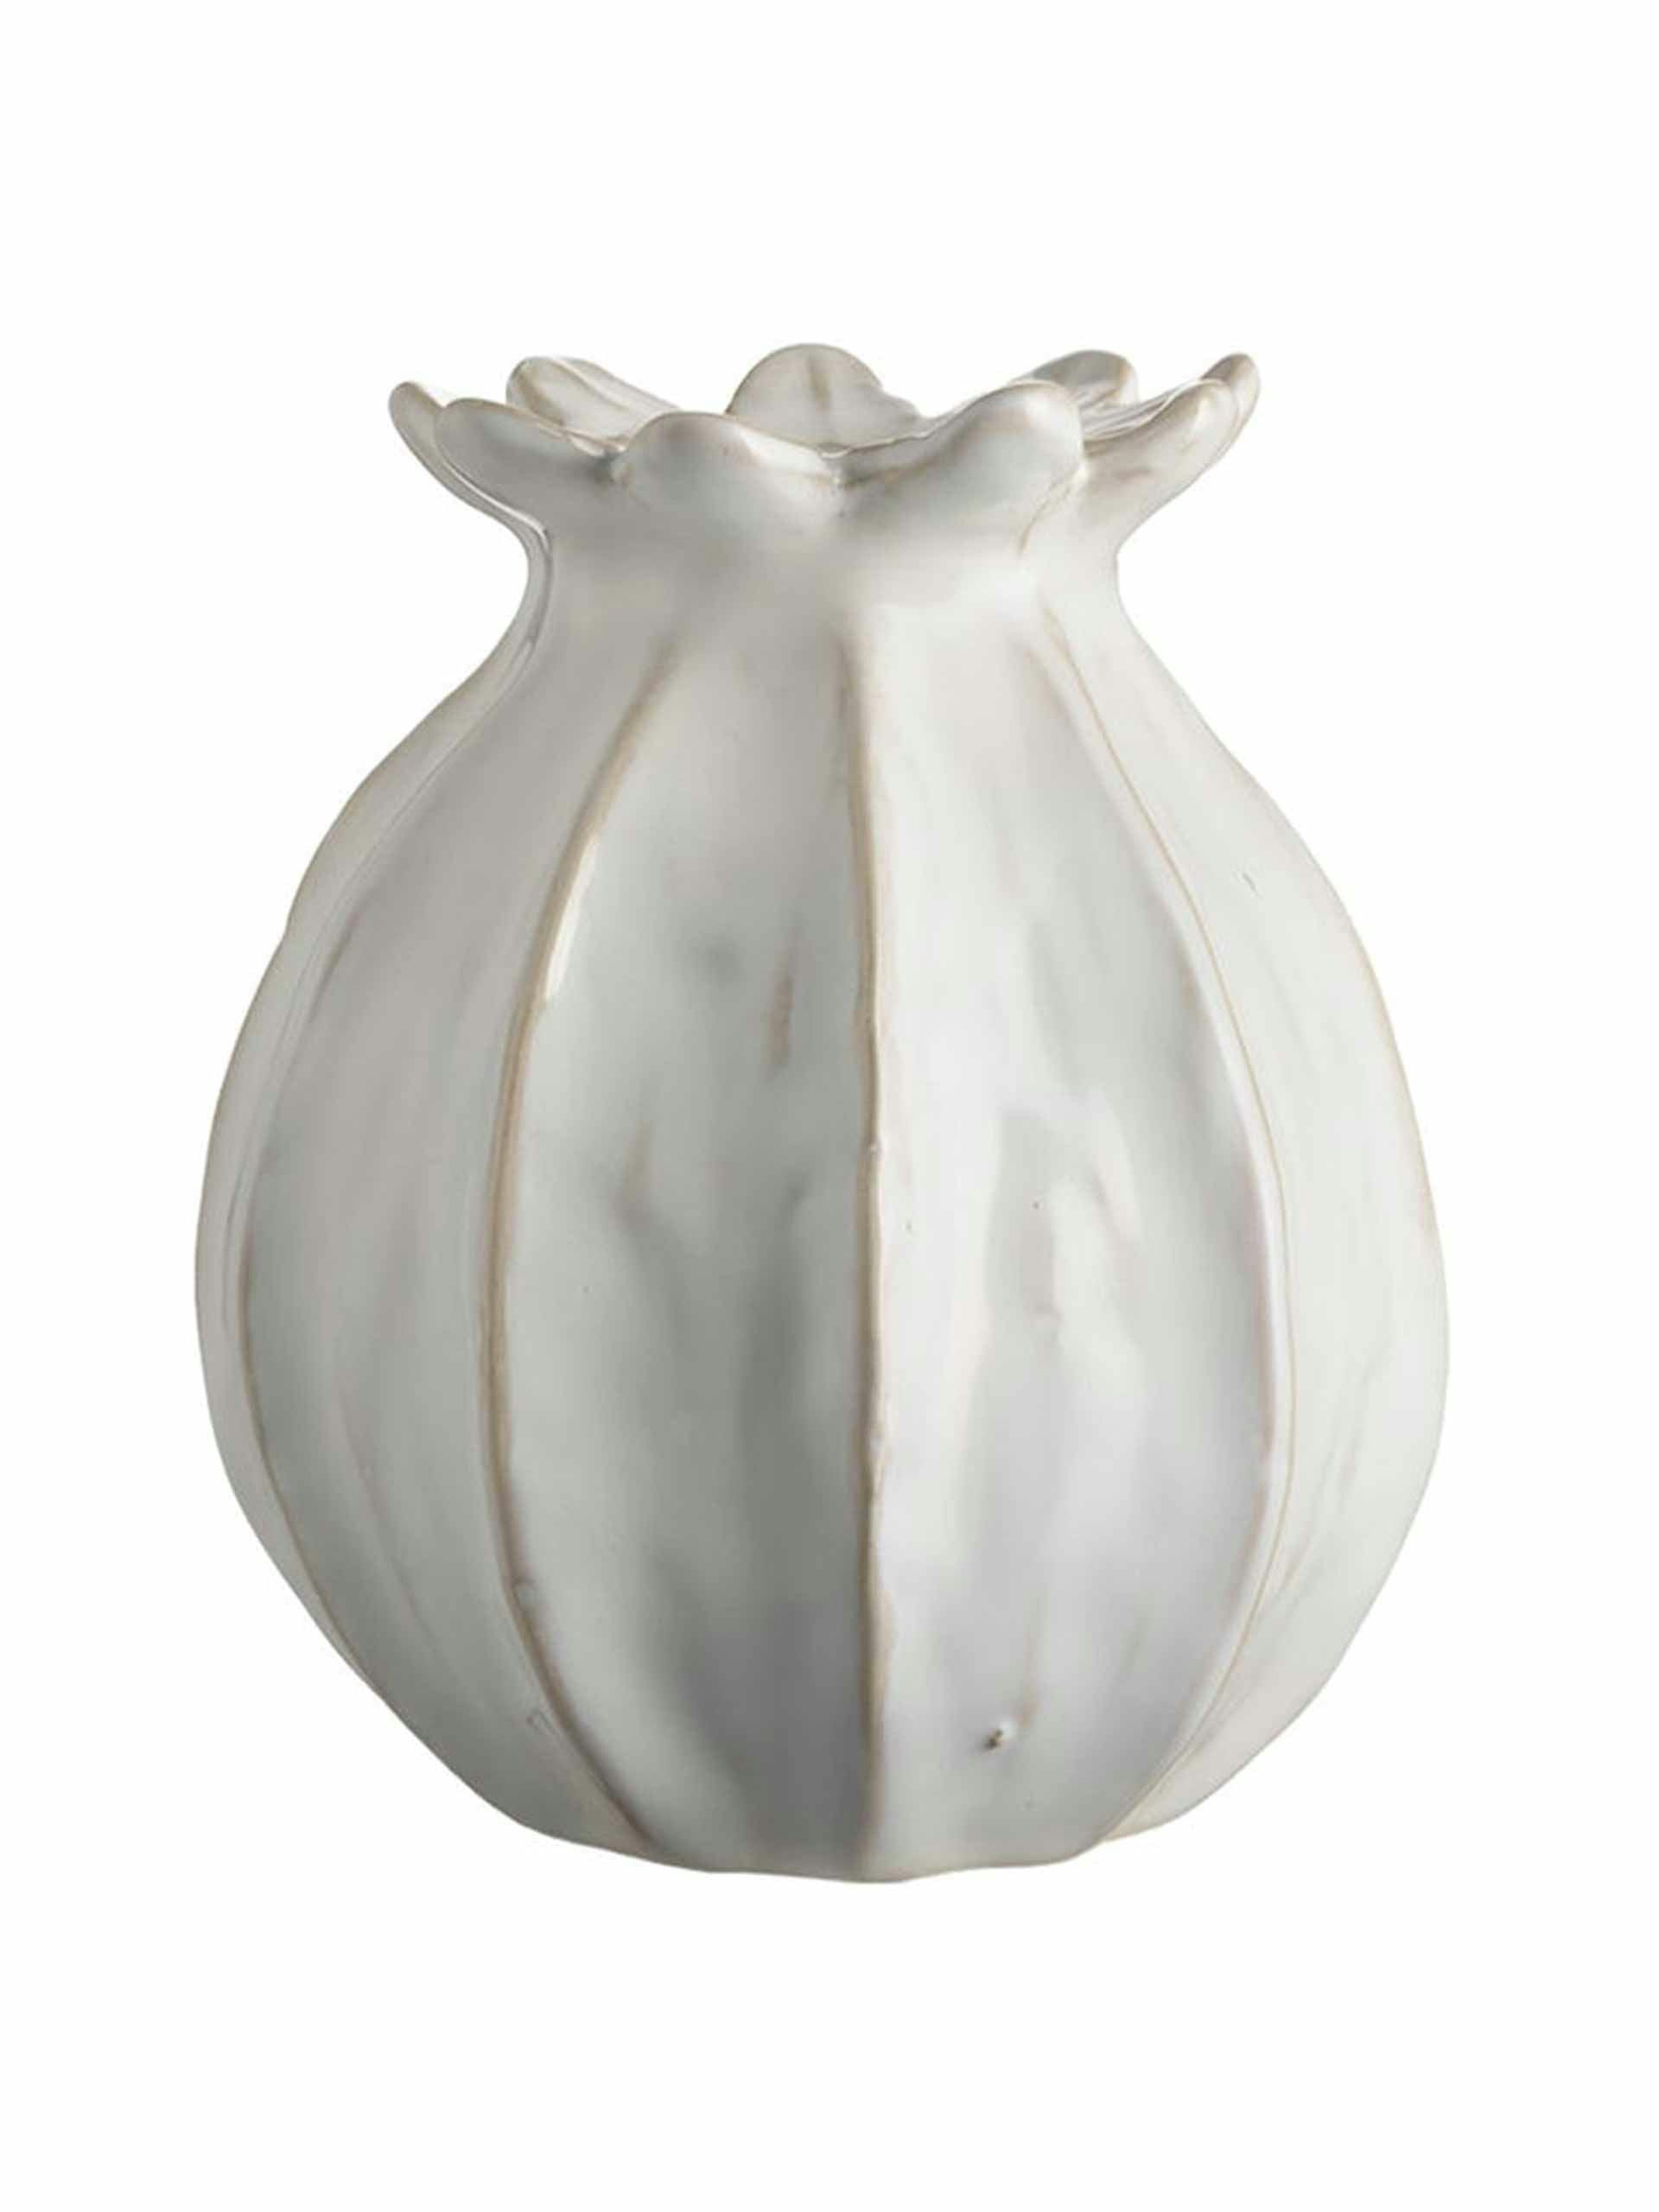 Poppy head vase